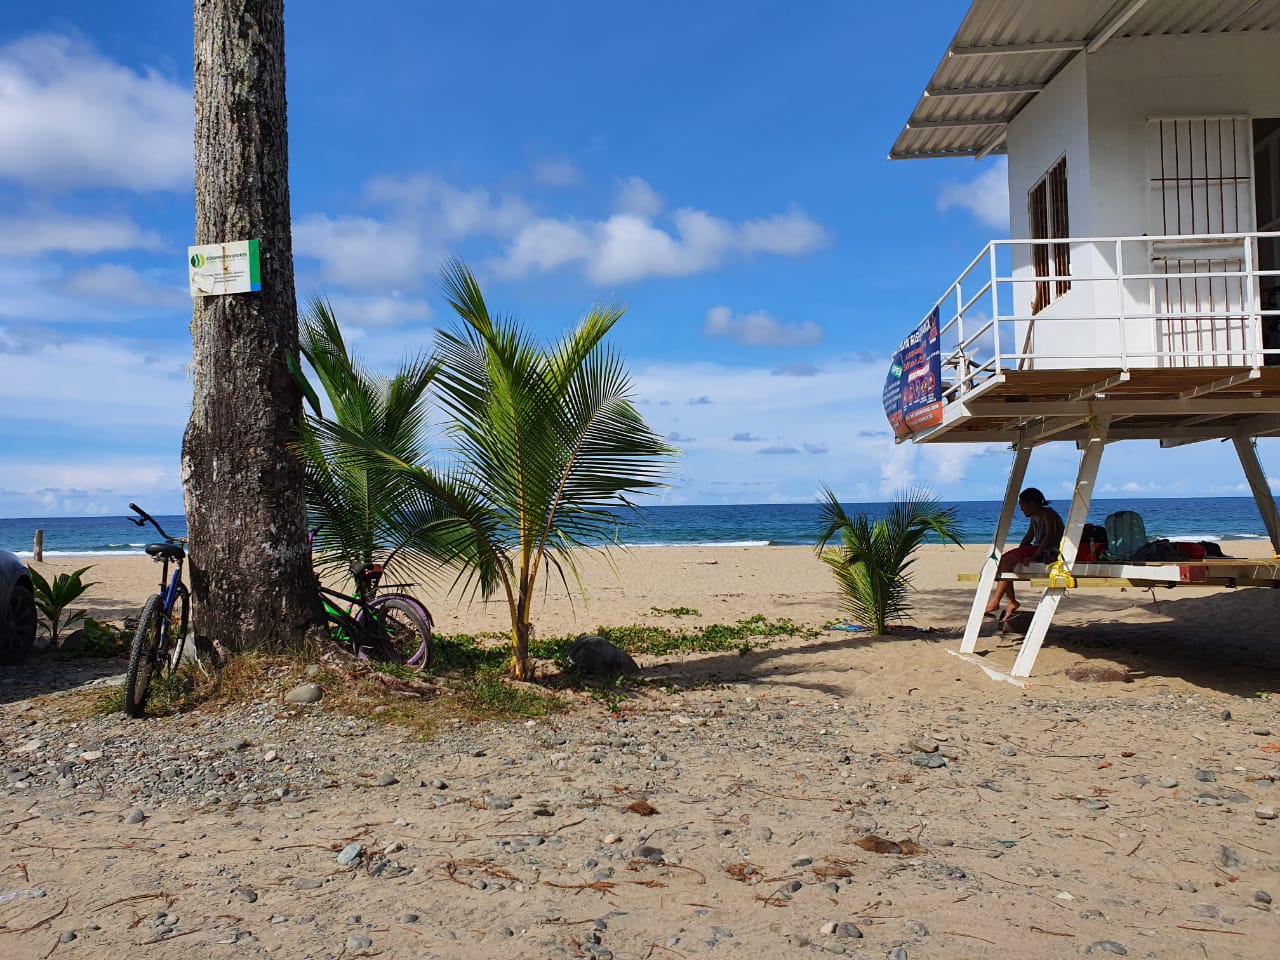 Sur-Sur, el Caribe y más adelante el Norte-Norte: así va la hoja de ruta para el crecimiento del turismo de Costa Rica